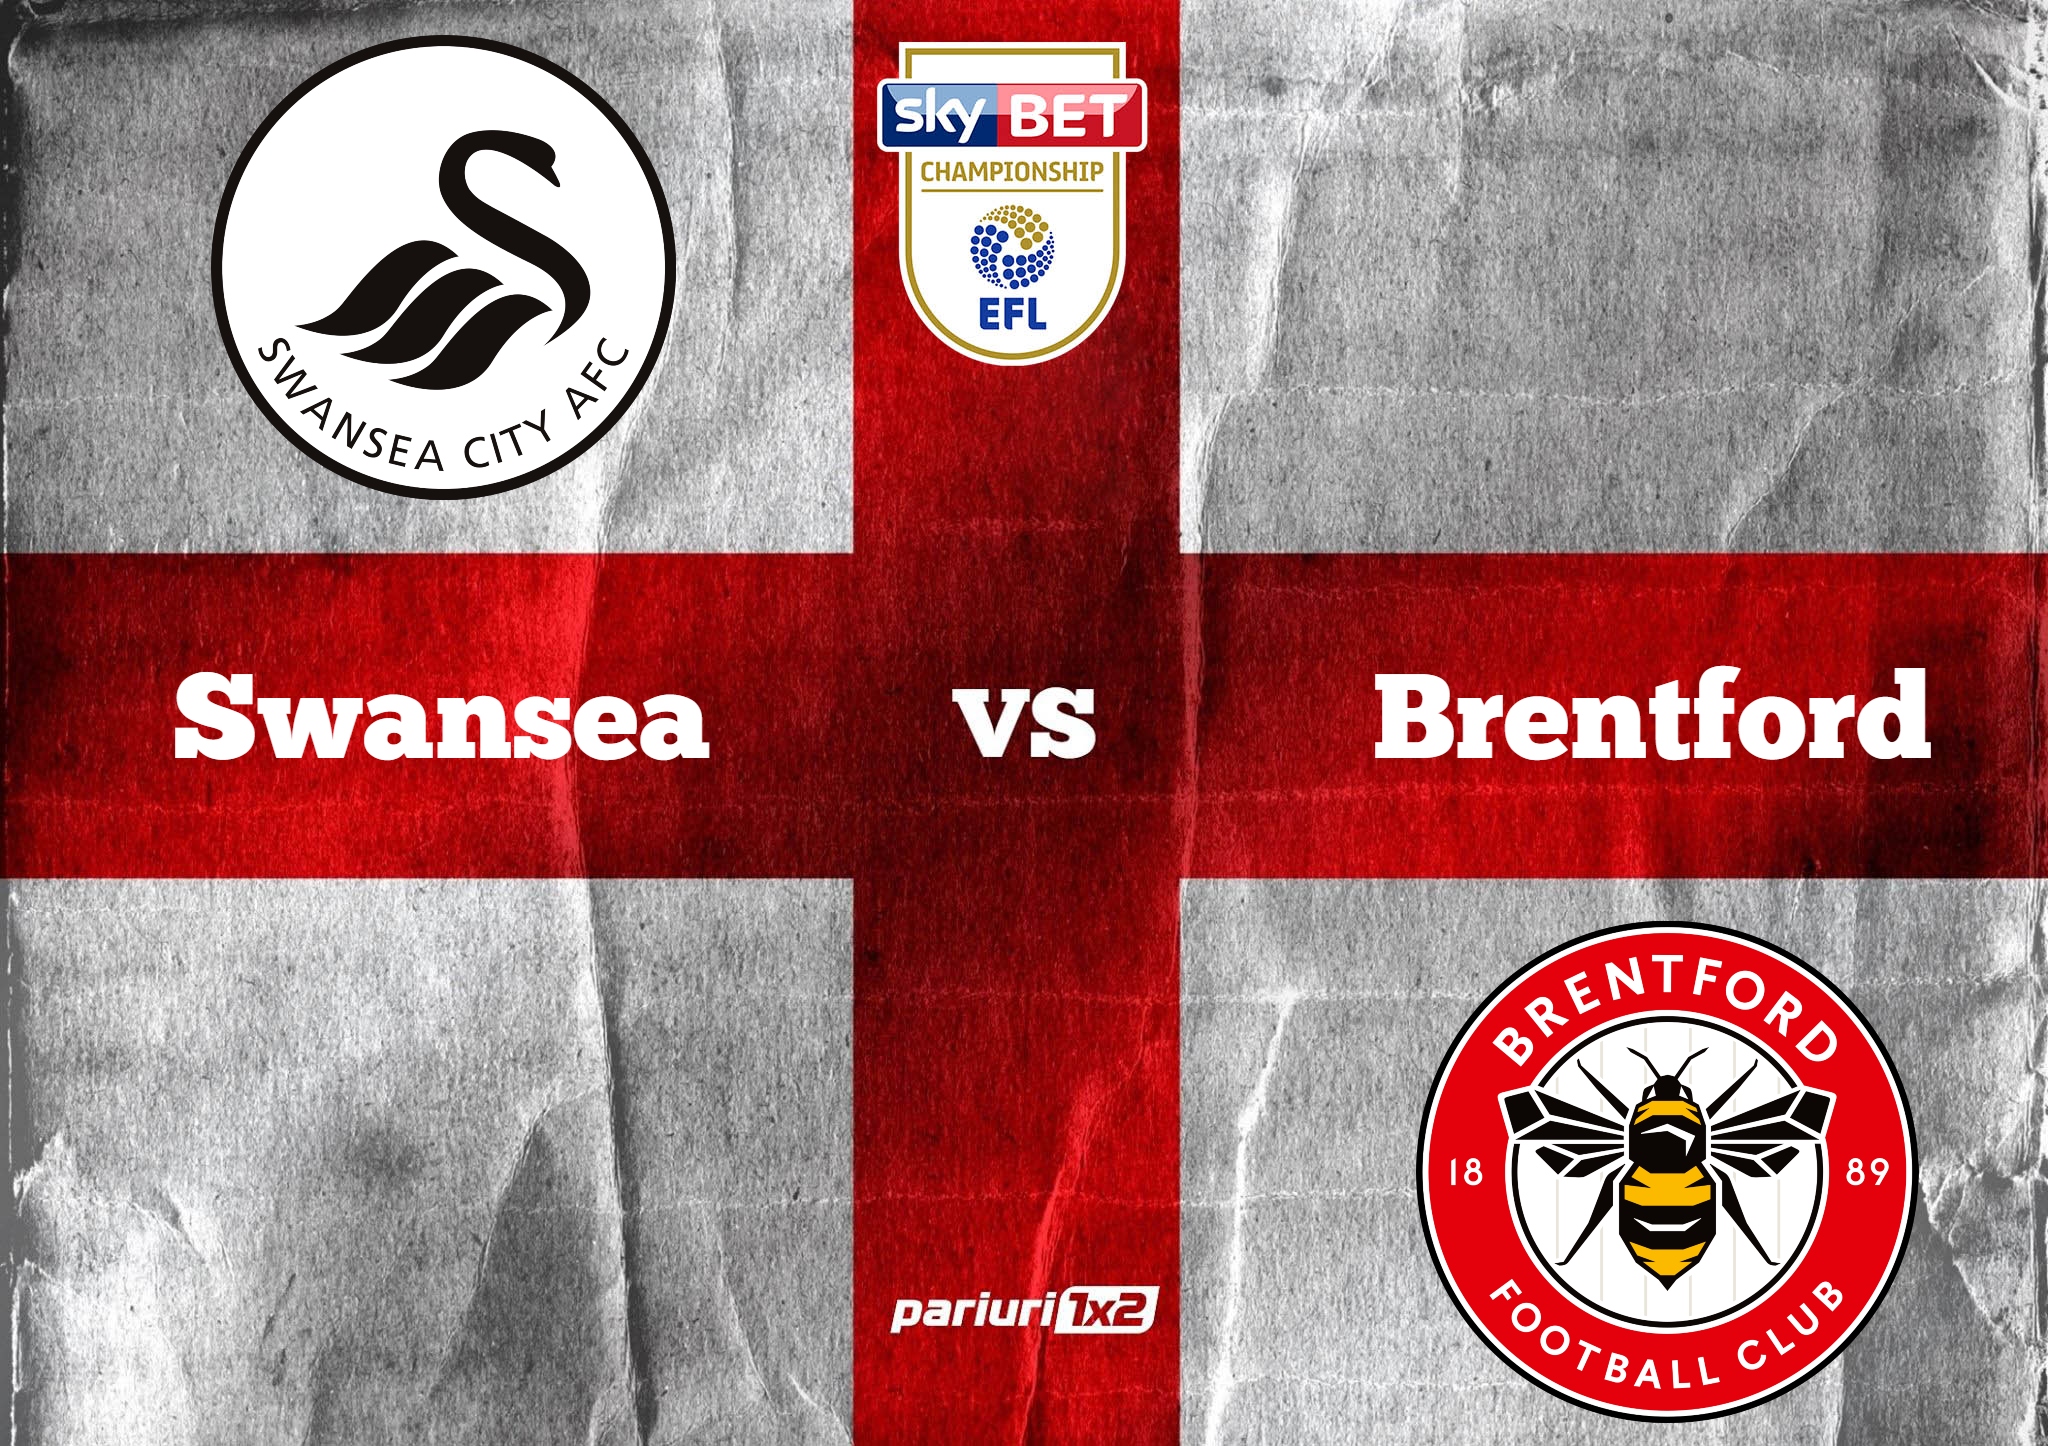 Ponturi fotbal online » Swansea – Brentford: Lupta pentru promovarea in Premier League se da in Tara Galilor! Ponturi in cote de 1.57 si 2.12!